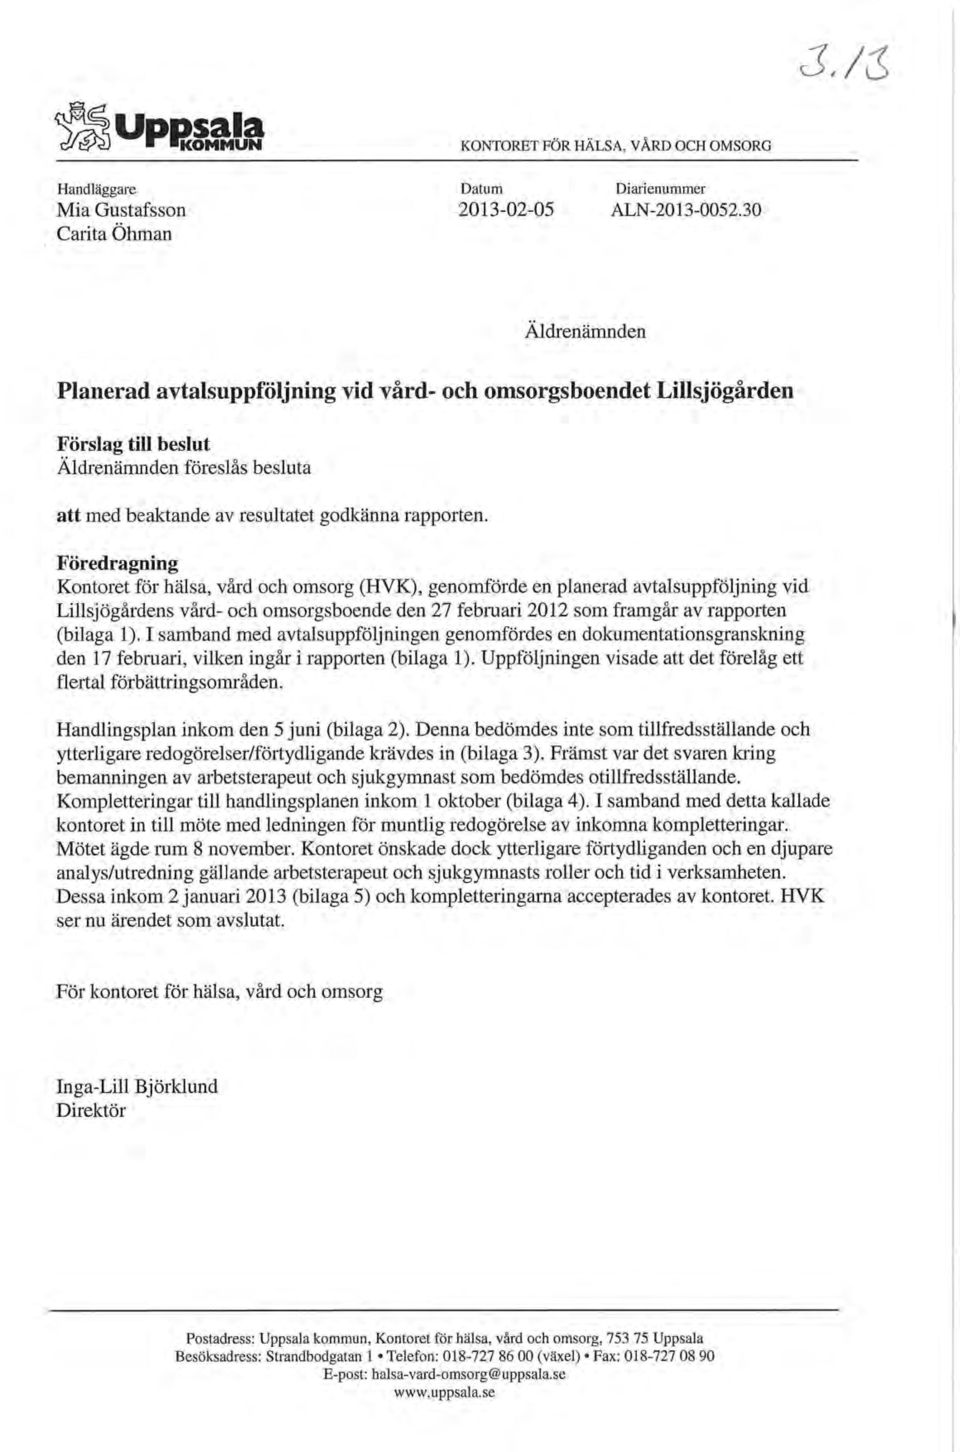 Föredragning Kontoret för hälsa, vård och omsorg (HVK), genomförde en planerad avtalsuppföljning vid Lillsjögårdens vård- och omsorgsboende den 27 februari 2012 som framgår av rapporten (bilaga 1).